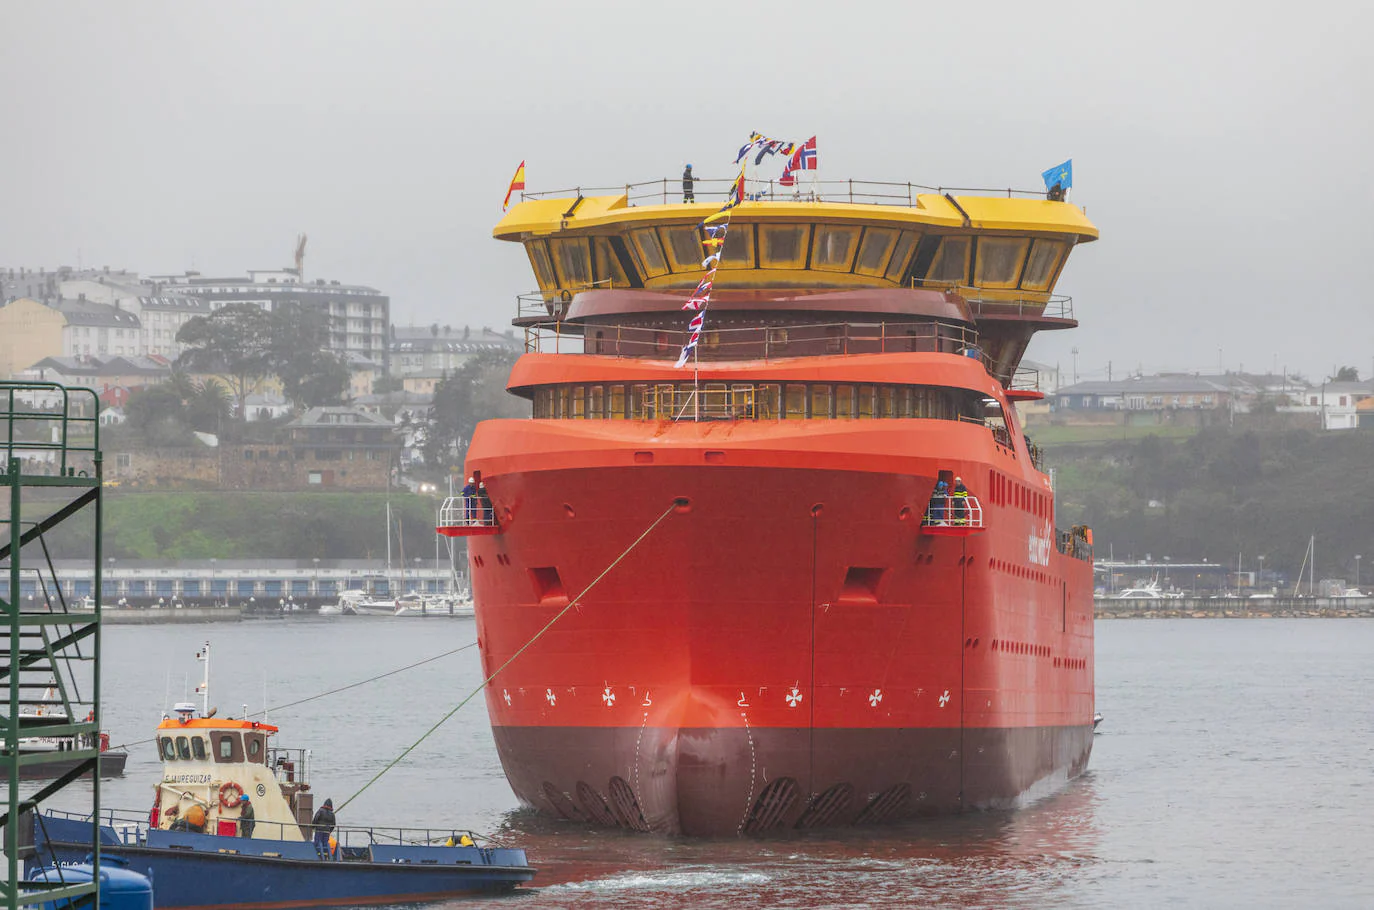 Gondán bota en Castropol un nuevo buque para el armador noruego Edda Wind ASA